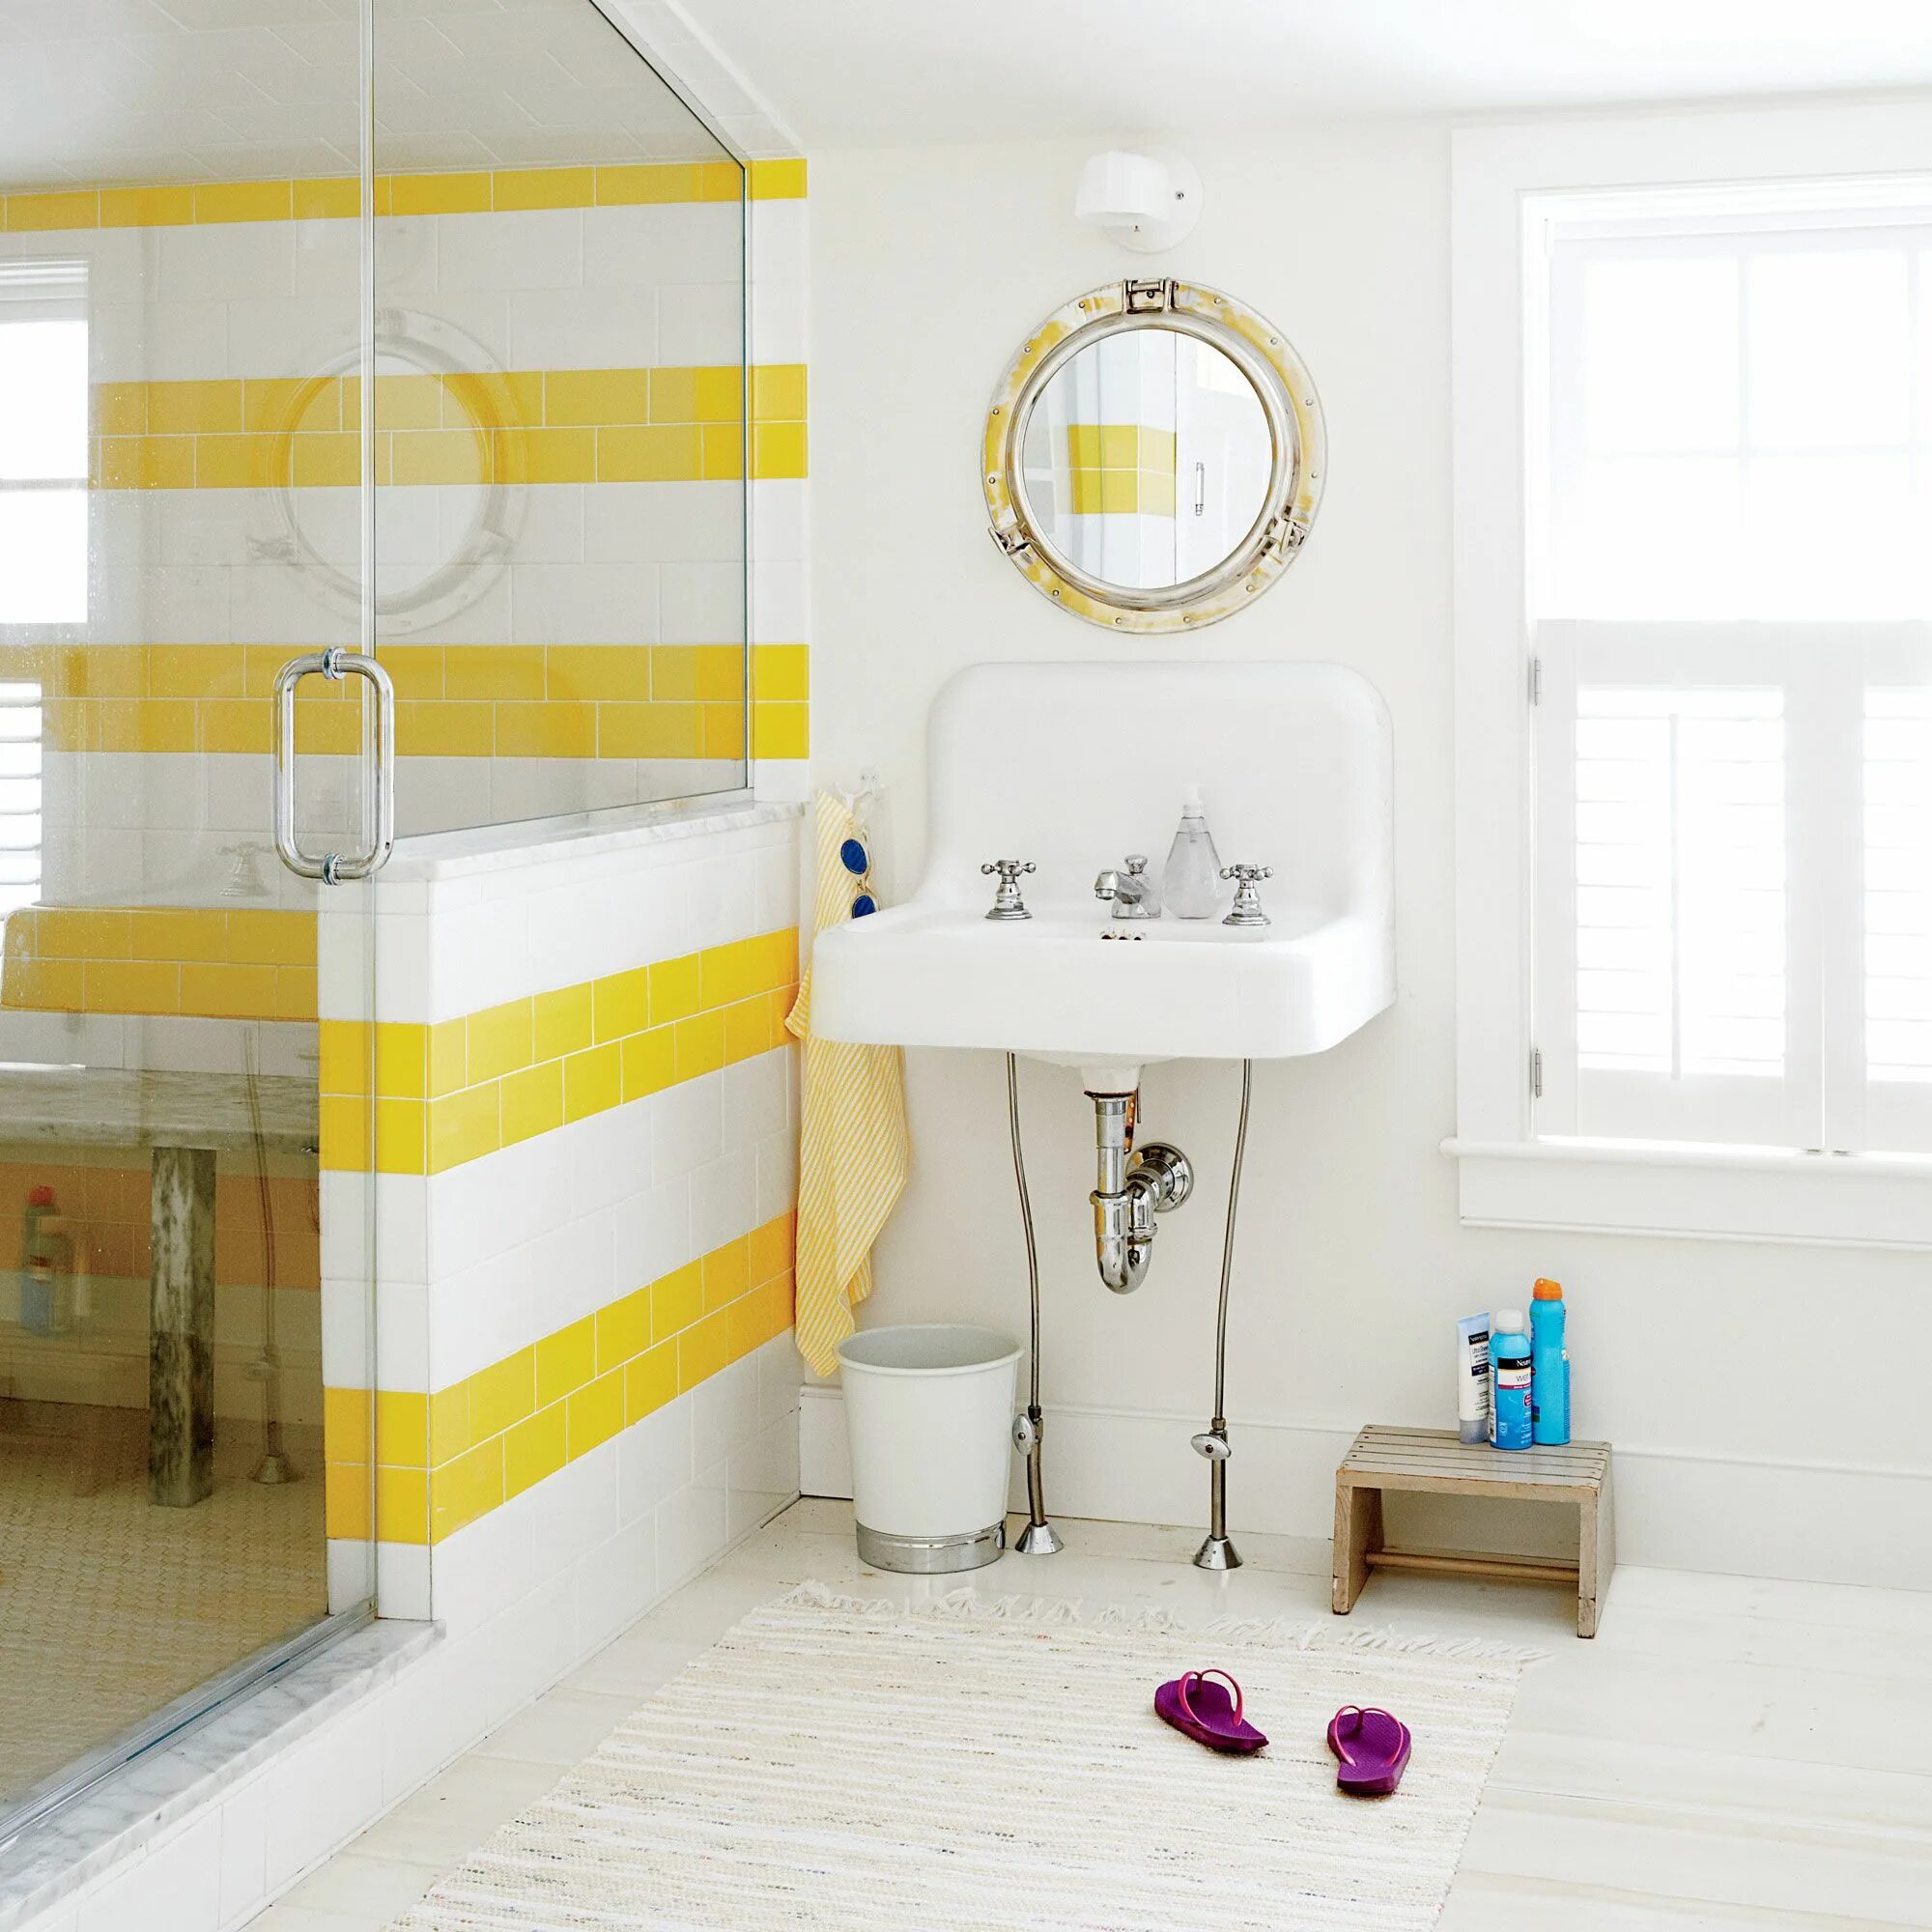 Желтая плитка купить. Желтая плитка для ванной комнаты. Желтая ванная комната. Желто белая ванная комната. Желто белая плитка в ванной.